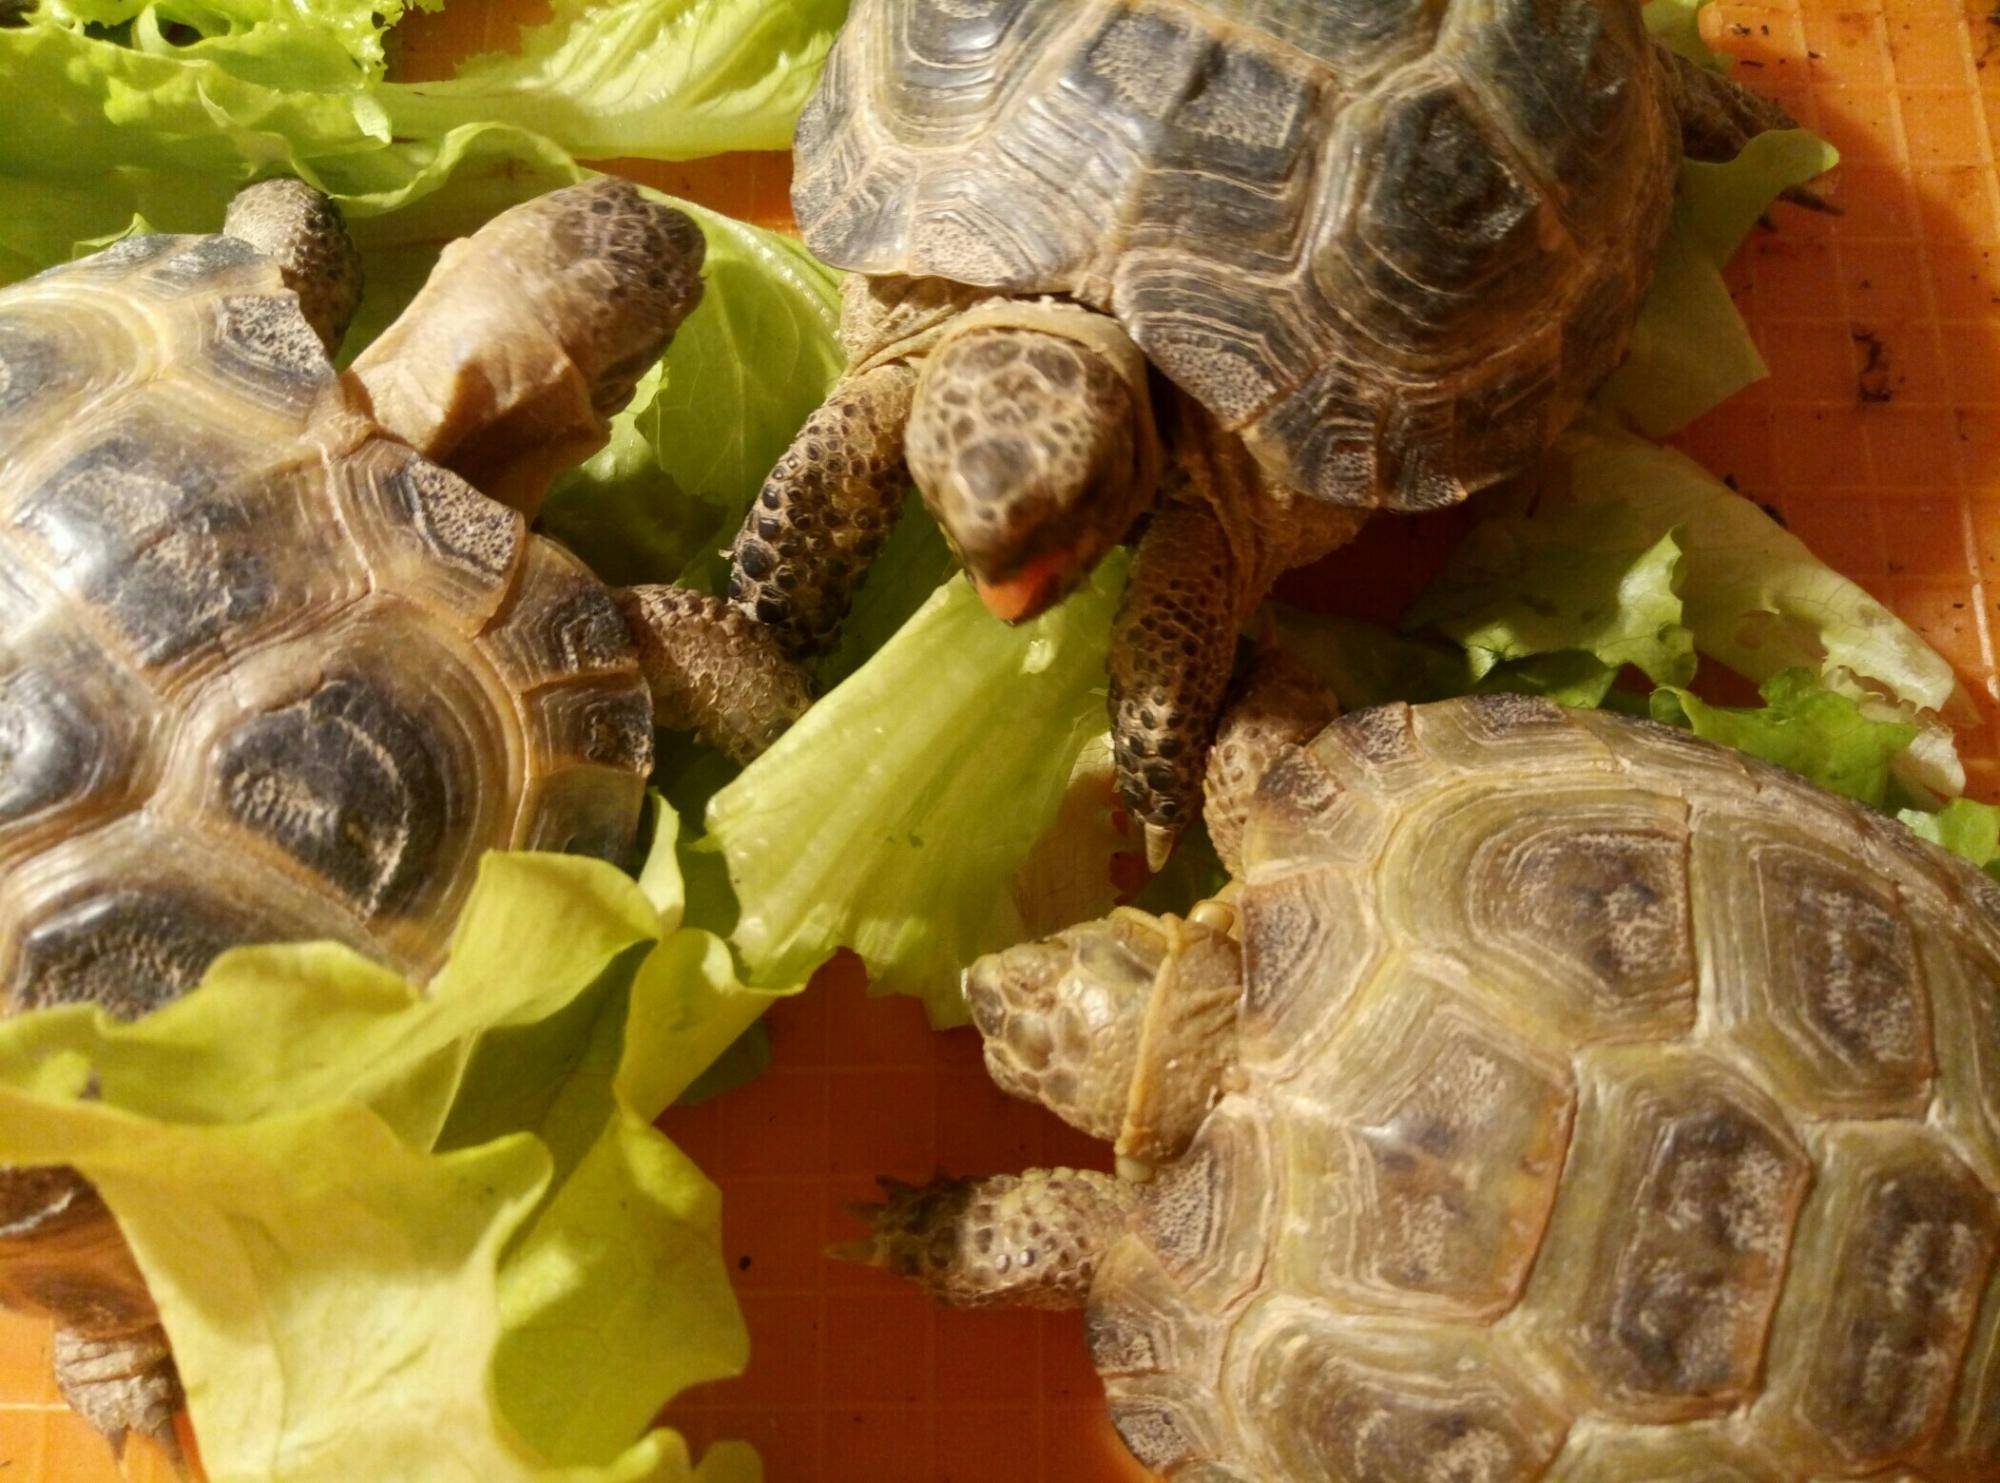 Среднеазиатская черепаха — уход и содержание дома